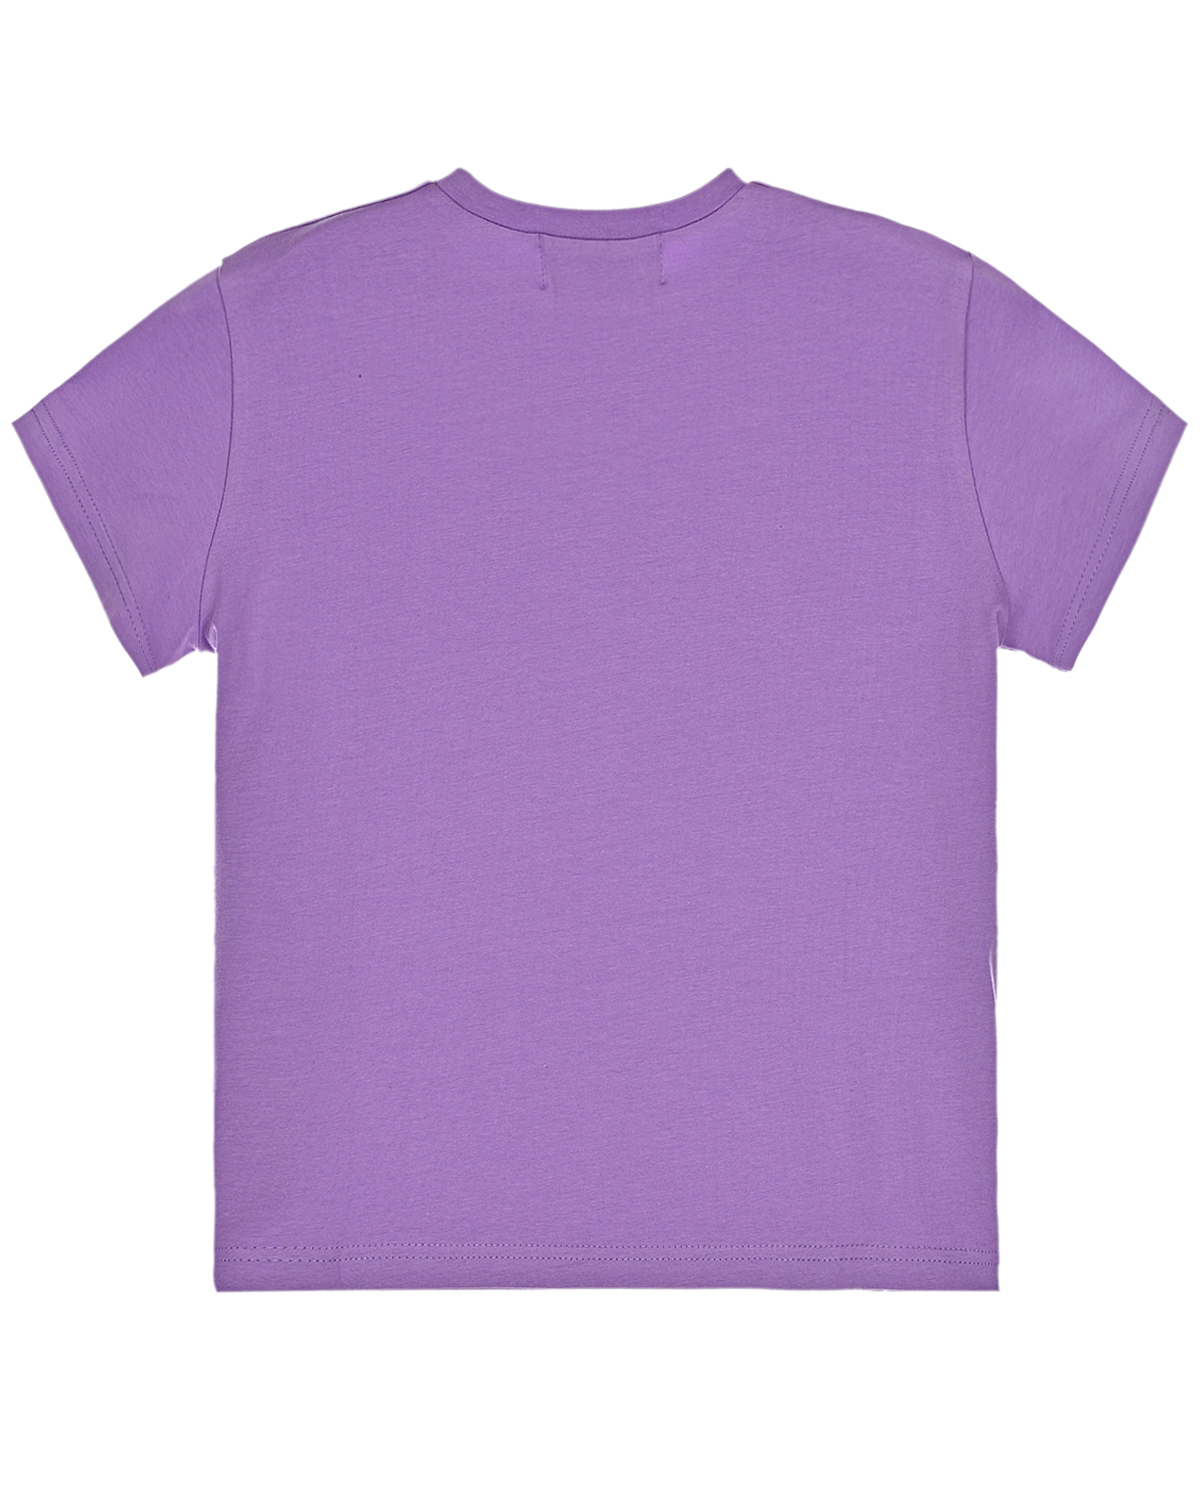 Фиолетовая футболка с принтом Natasha Zinko детская, размер 140, цвет фиолетовый - фото 2